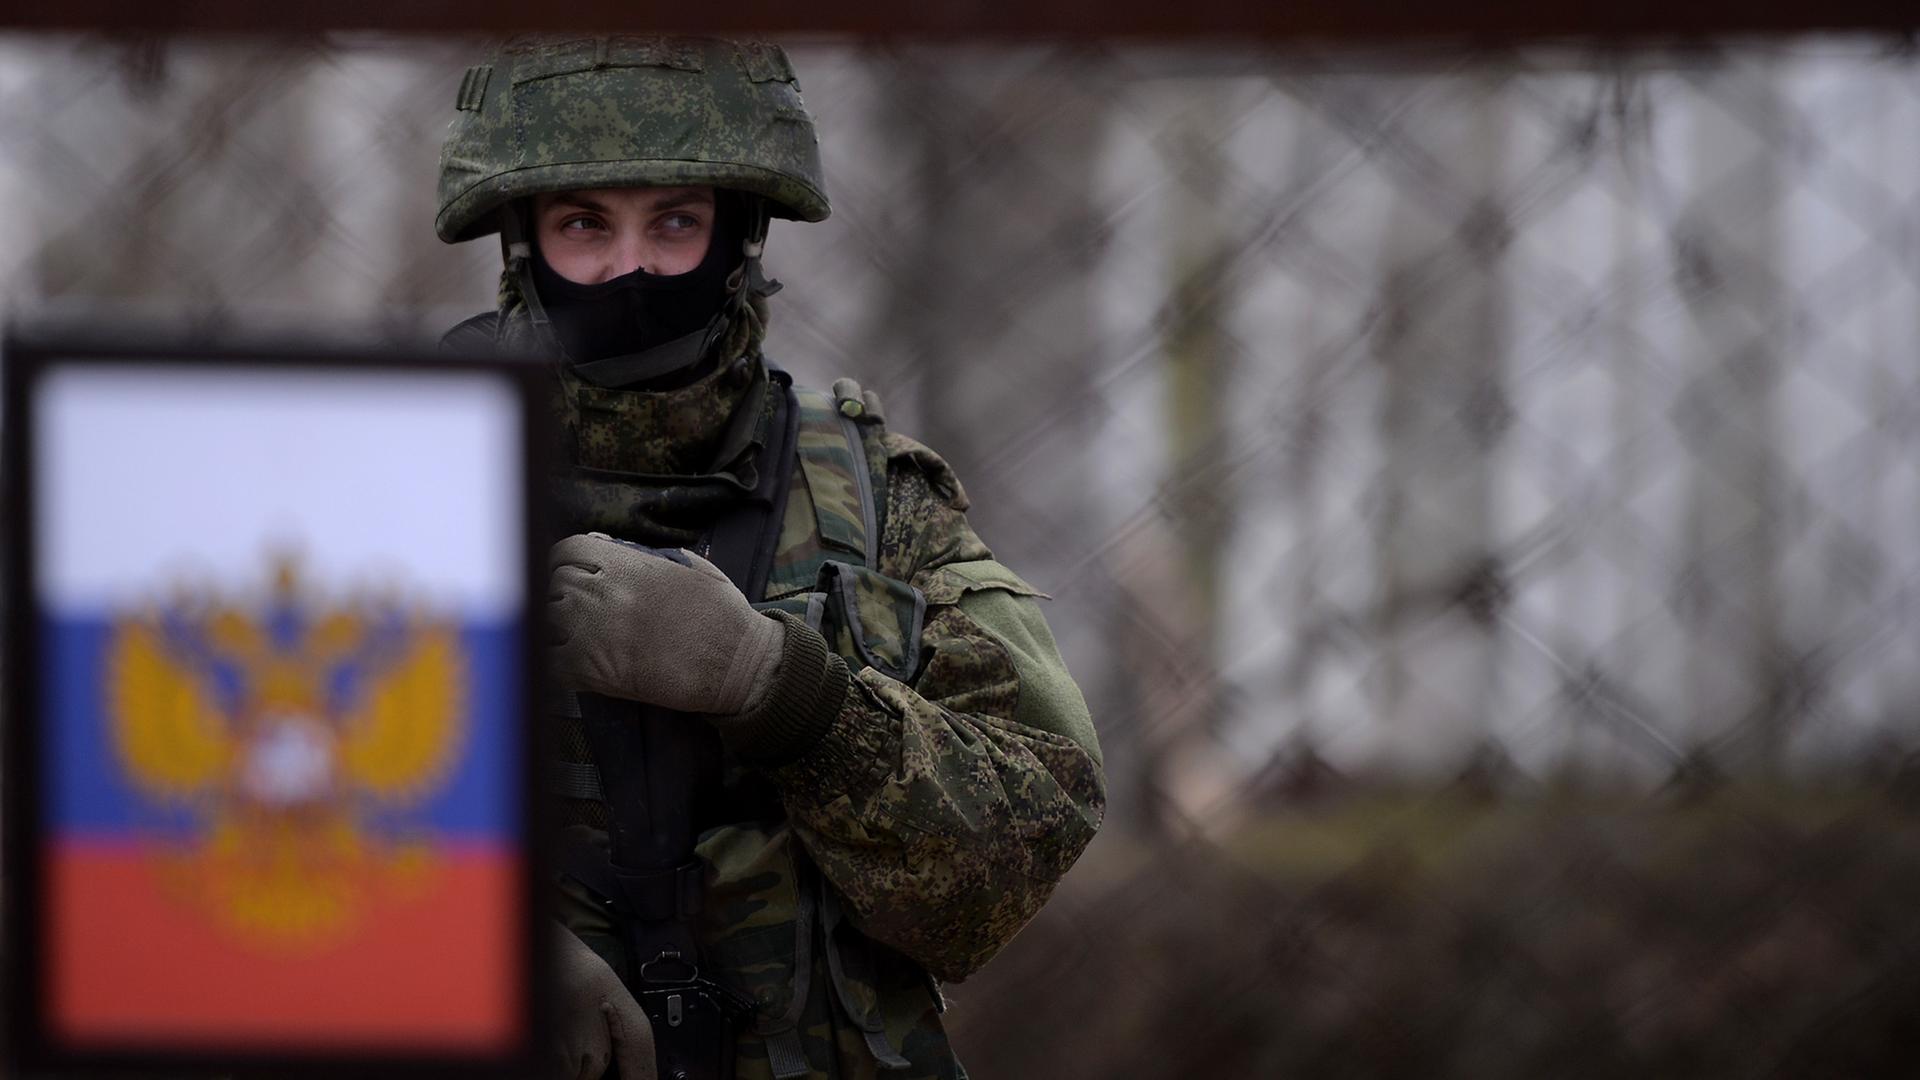 Ein russischer Soldat am ukrainischen Marinestützpunkt Novoozerne